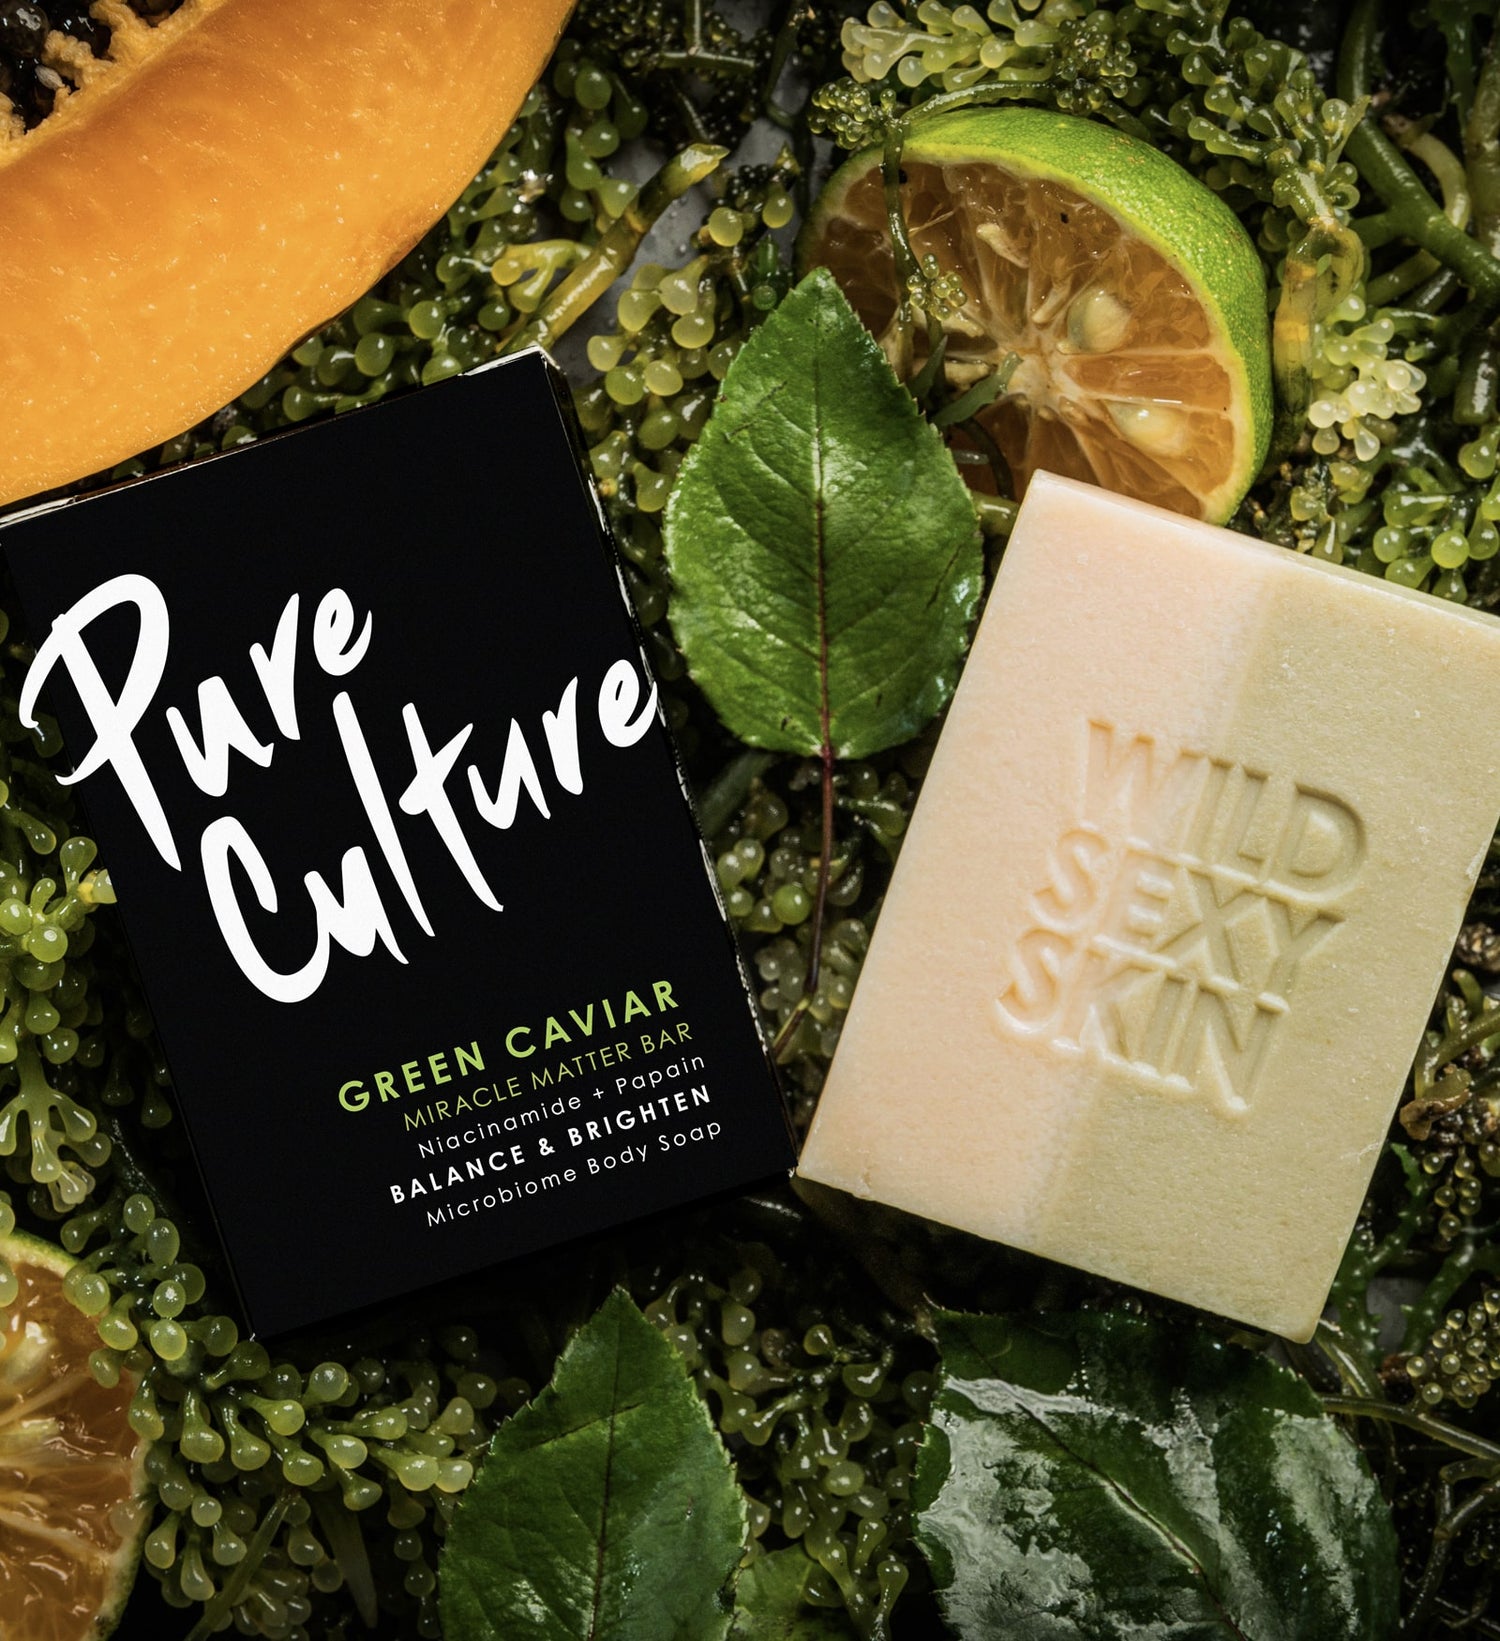 Green Caviar Pure Culture